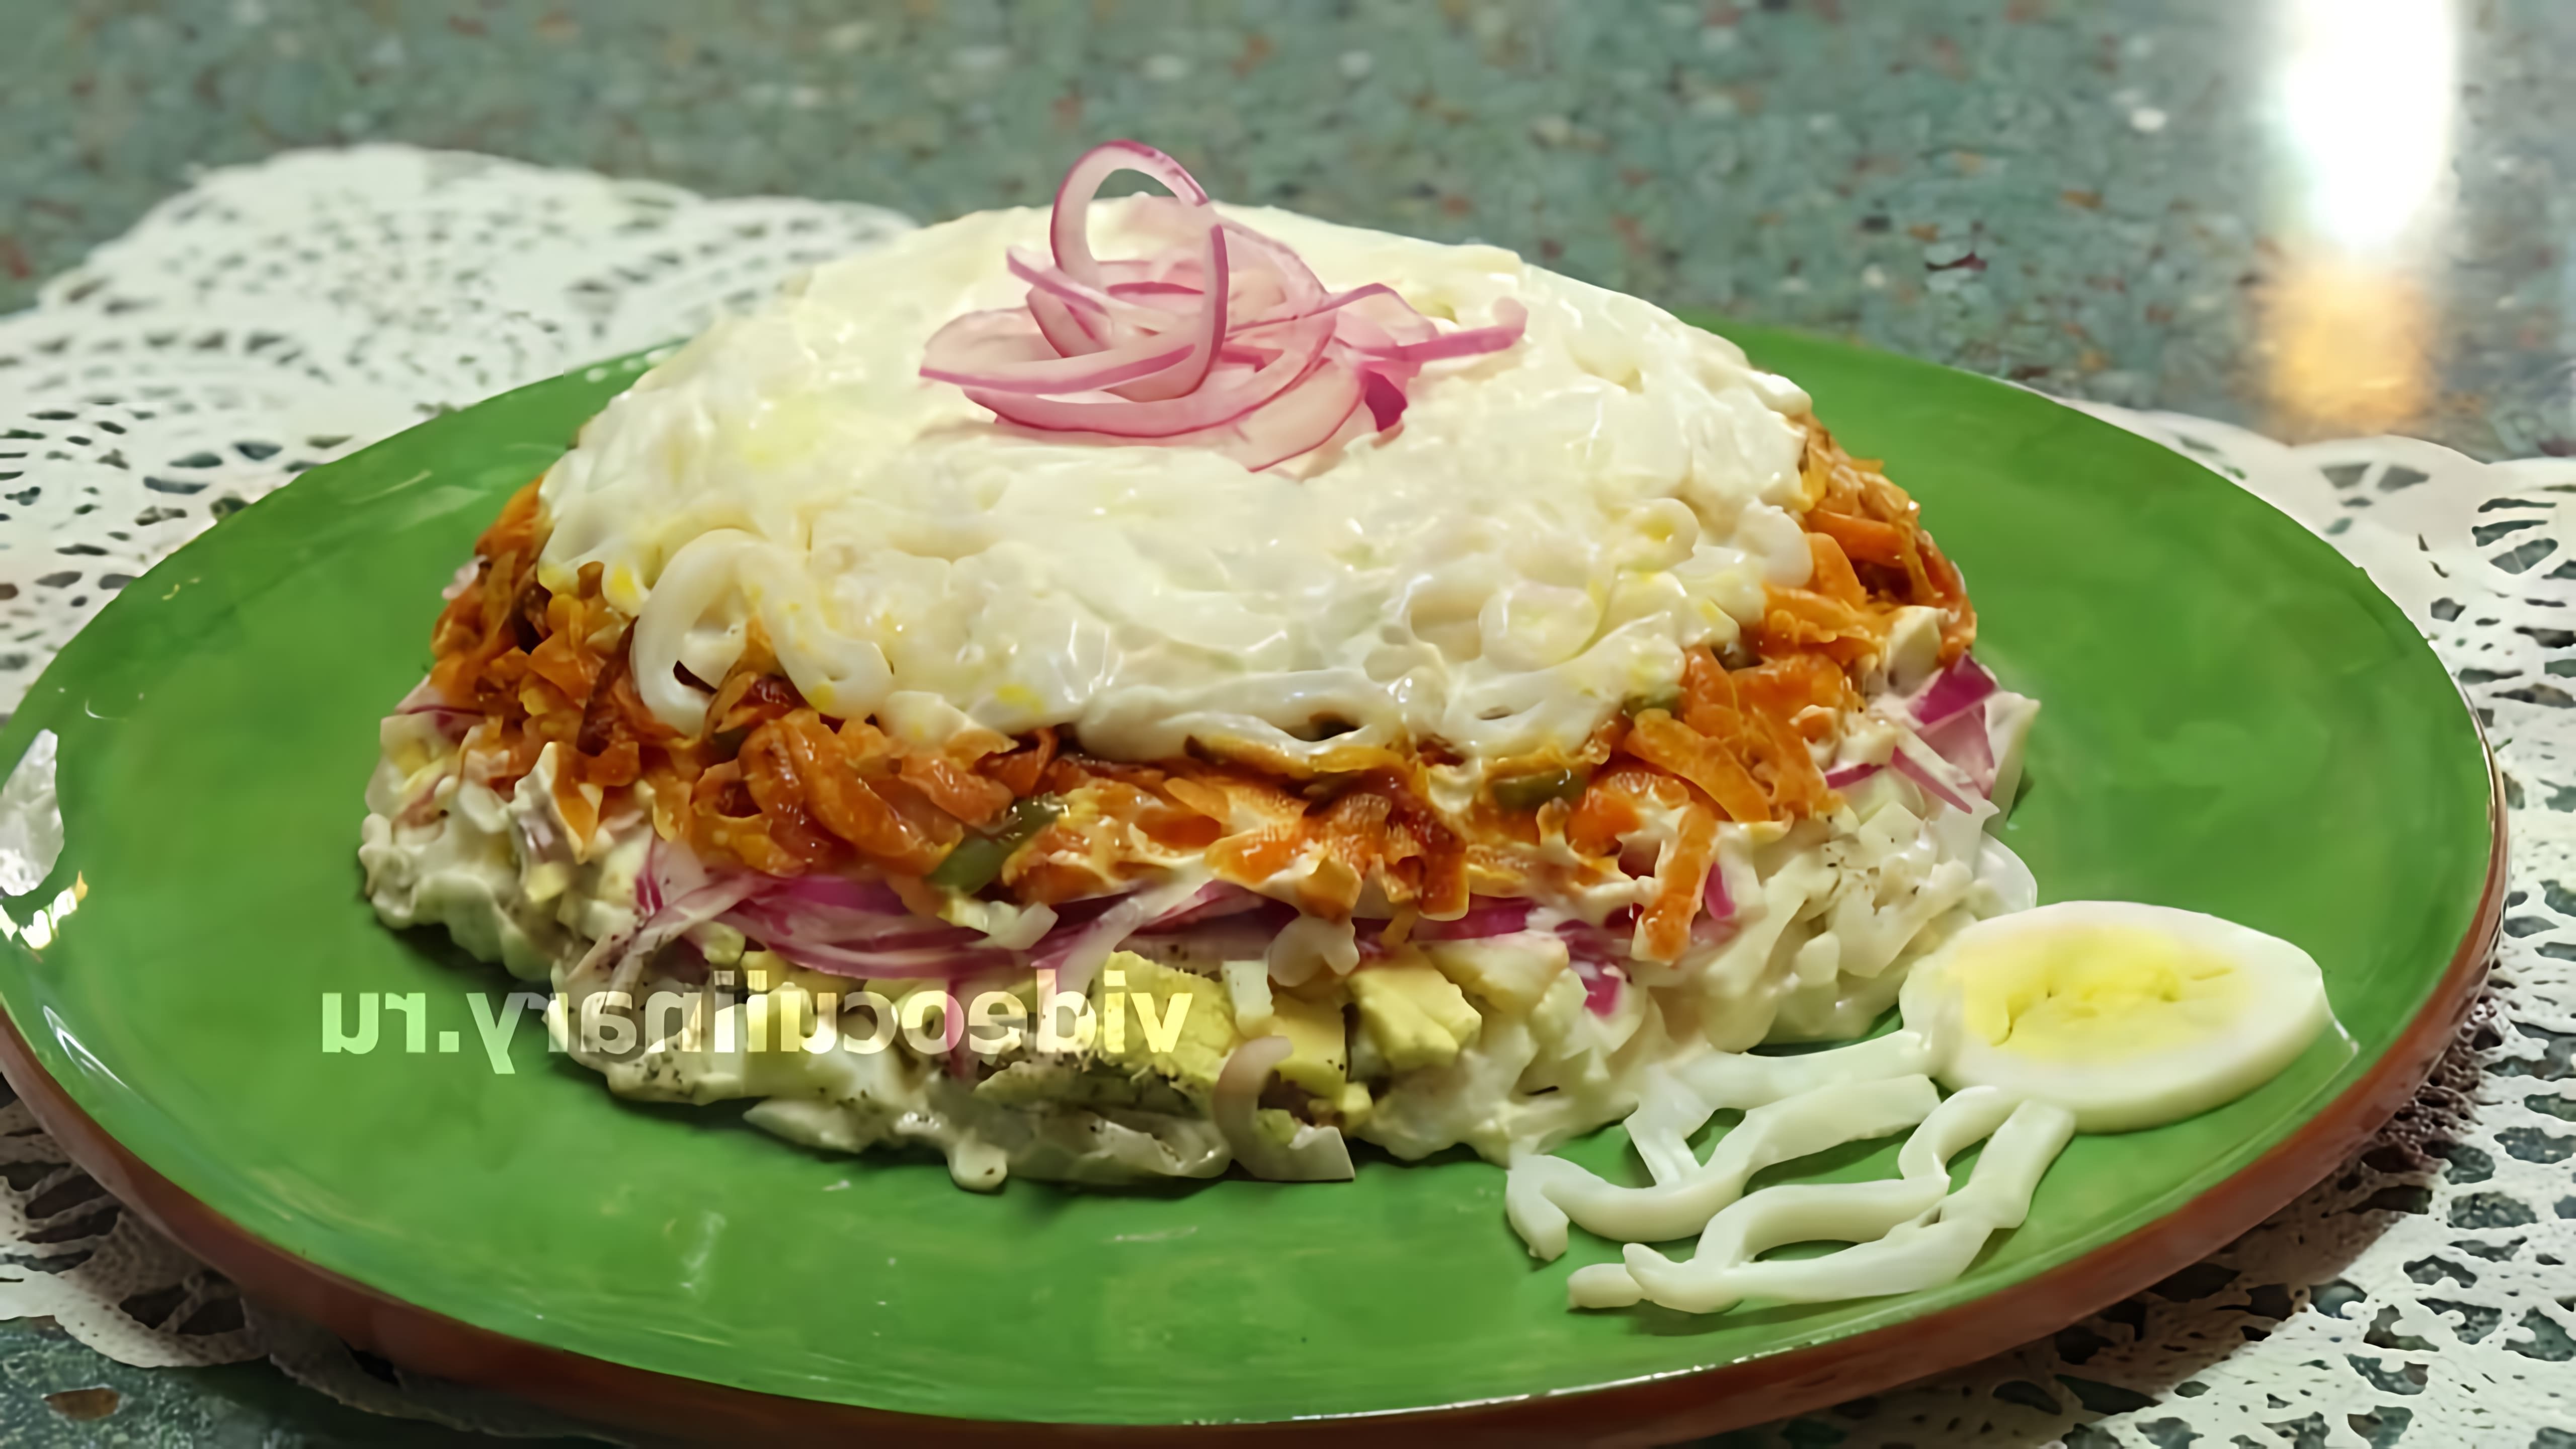 В этом видео демонстрируется рецепт салата-коктейля с кальмарами от Бабушки Эммы